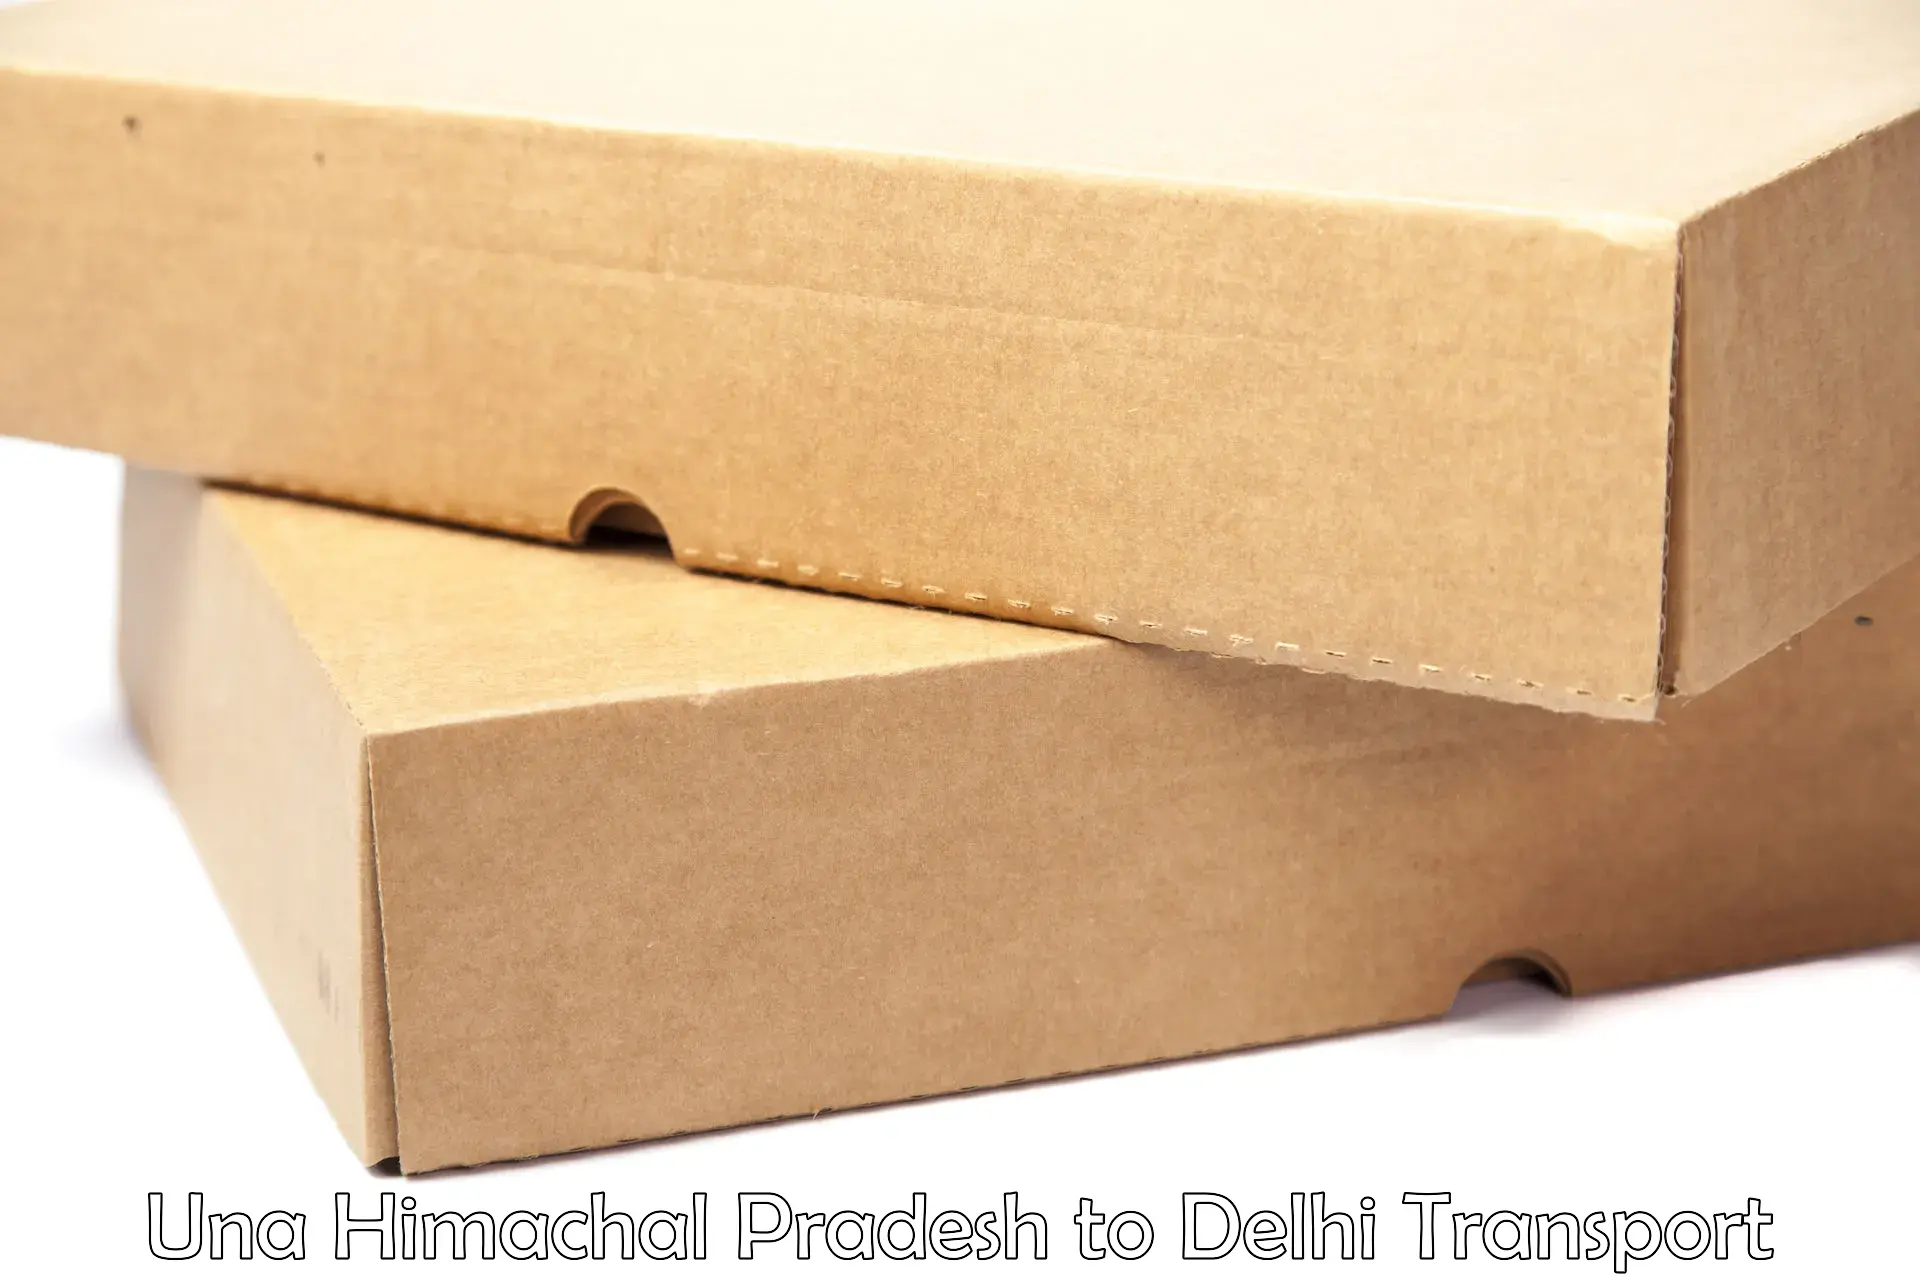 Parcel transport services Una Himachal Pradesh to IIT Delhi